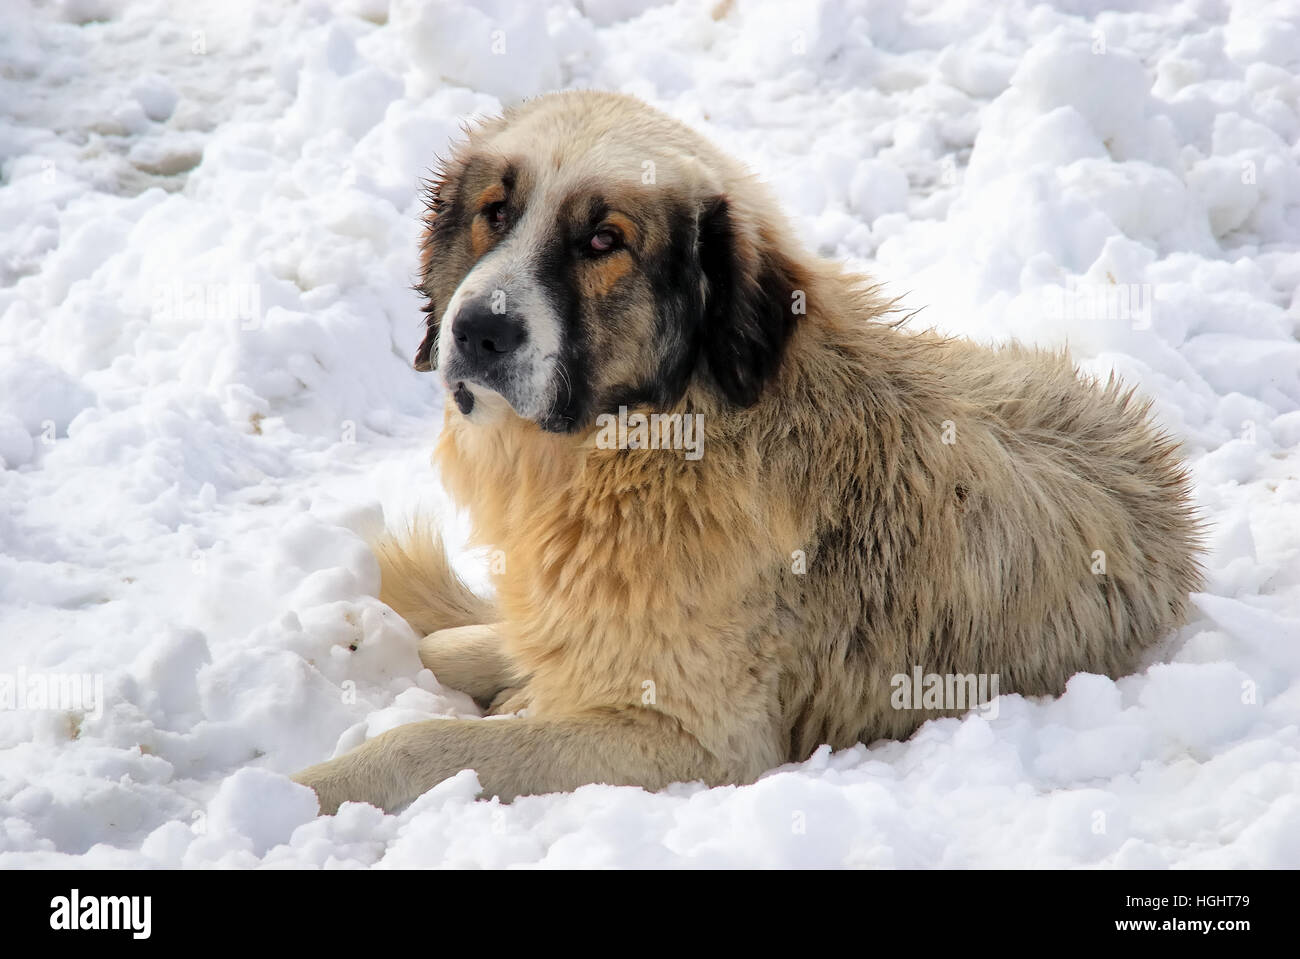 Maramures, einer abgelegenen Karpatenregion von Rumänien. Prislop Bergpass.  Rumänischen Karpaten Schäferhund oder Karpaten Schäferhund oder Ciobanesc  Romanesc Carpatin Zavod (Alter Name) ist ein Schäferhund Hund native der  Karpaten Stockfotografie - Alamy